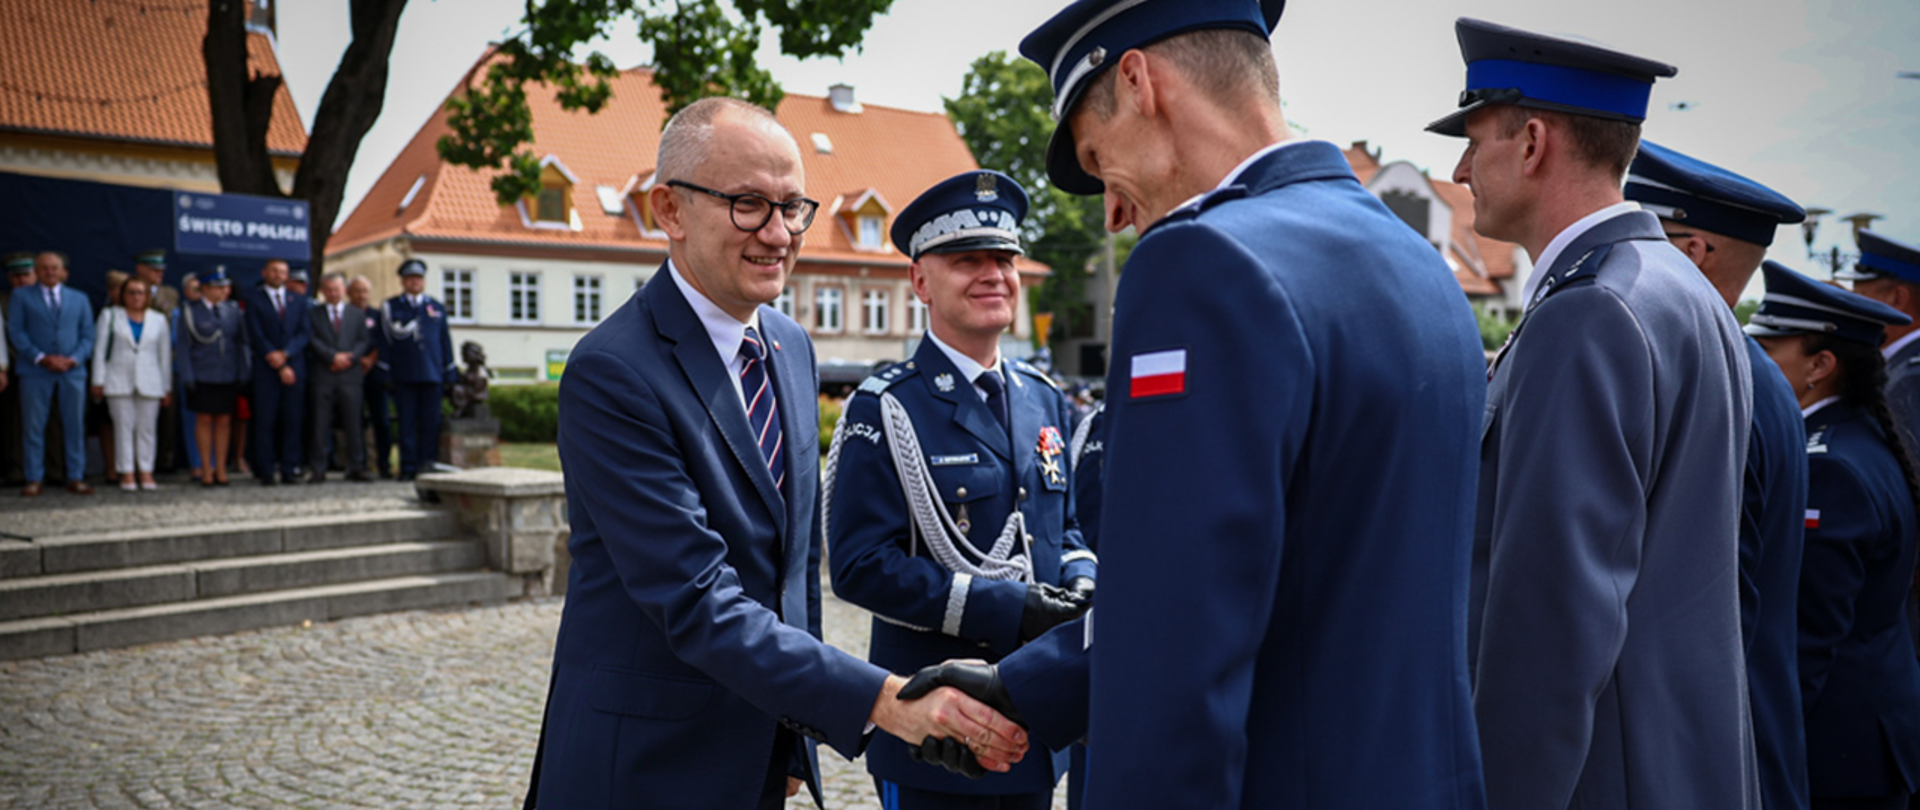 Wiceminister Błażej Poboży wraz z komendantem Jarosławem Szymczykiem składa gratulacje odznaczonym funkcjonariuszom